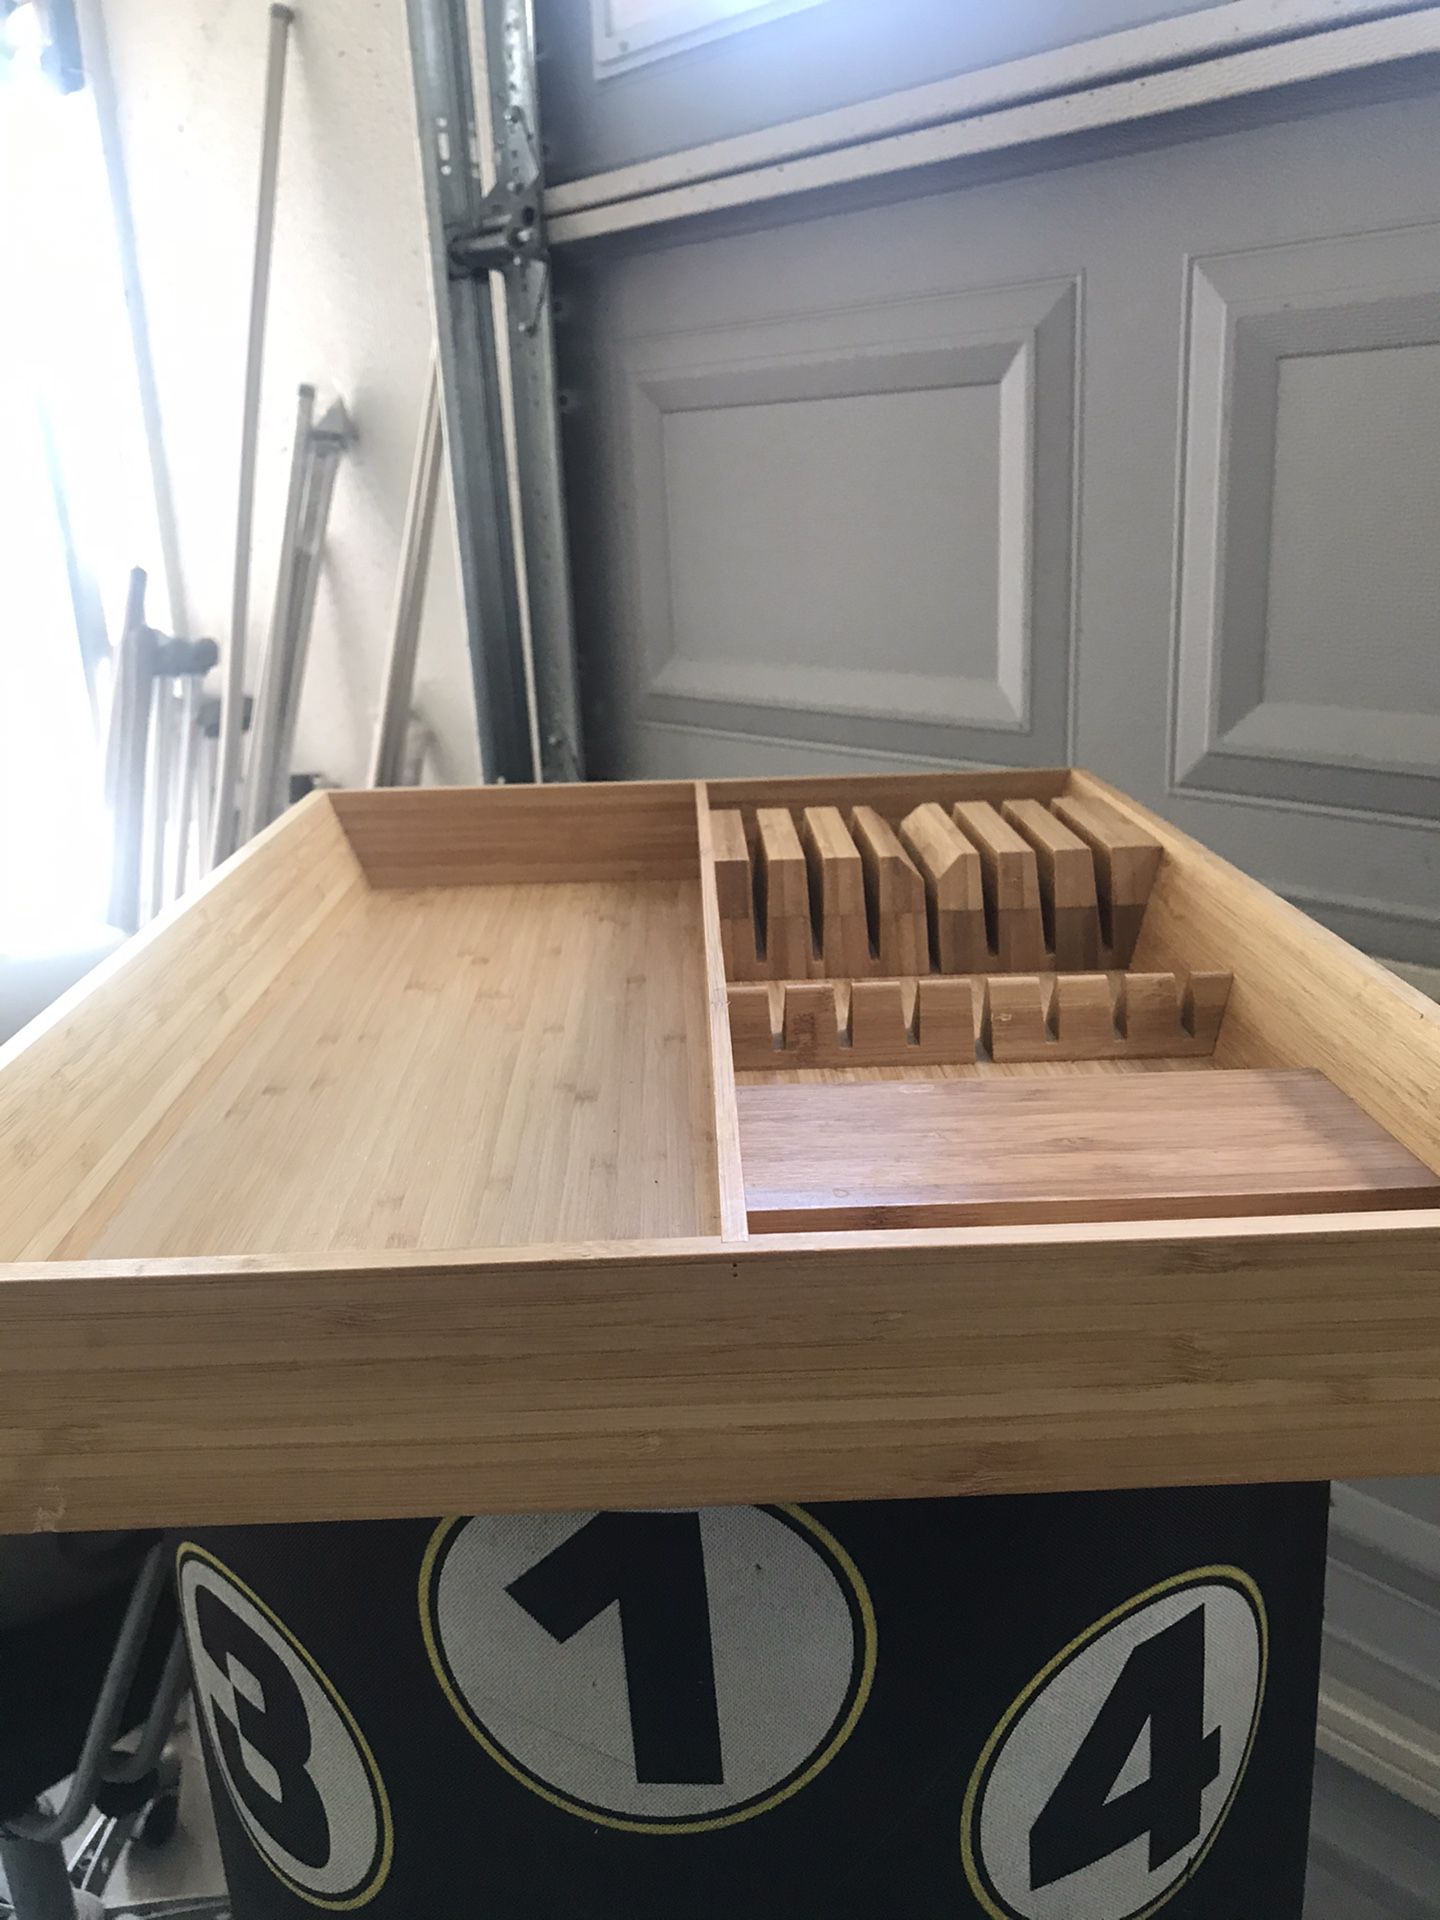 Wooden Kitchen drawer organizer